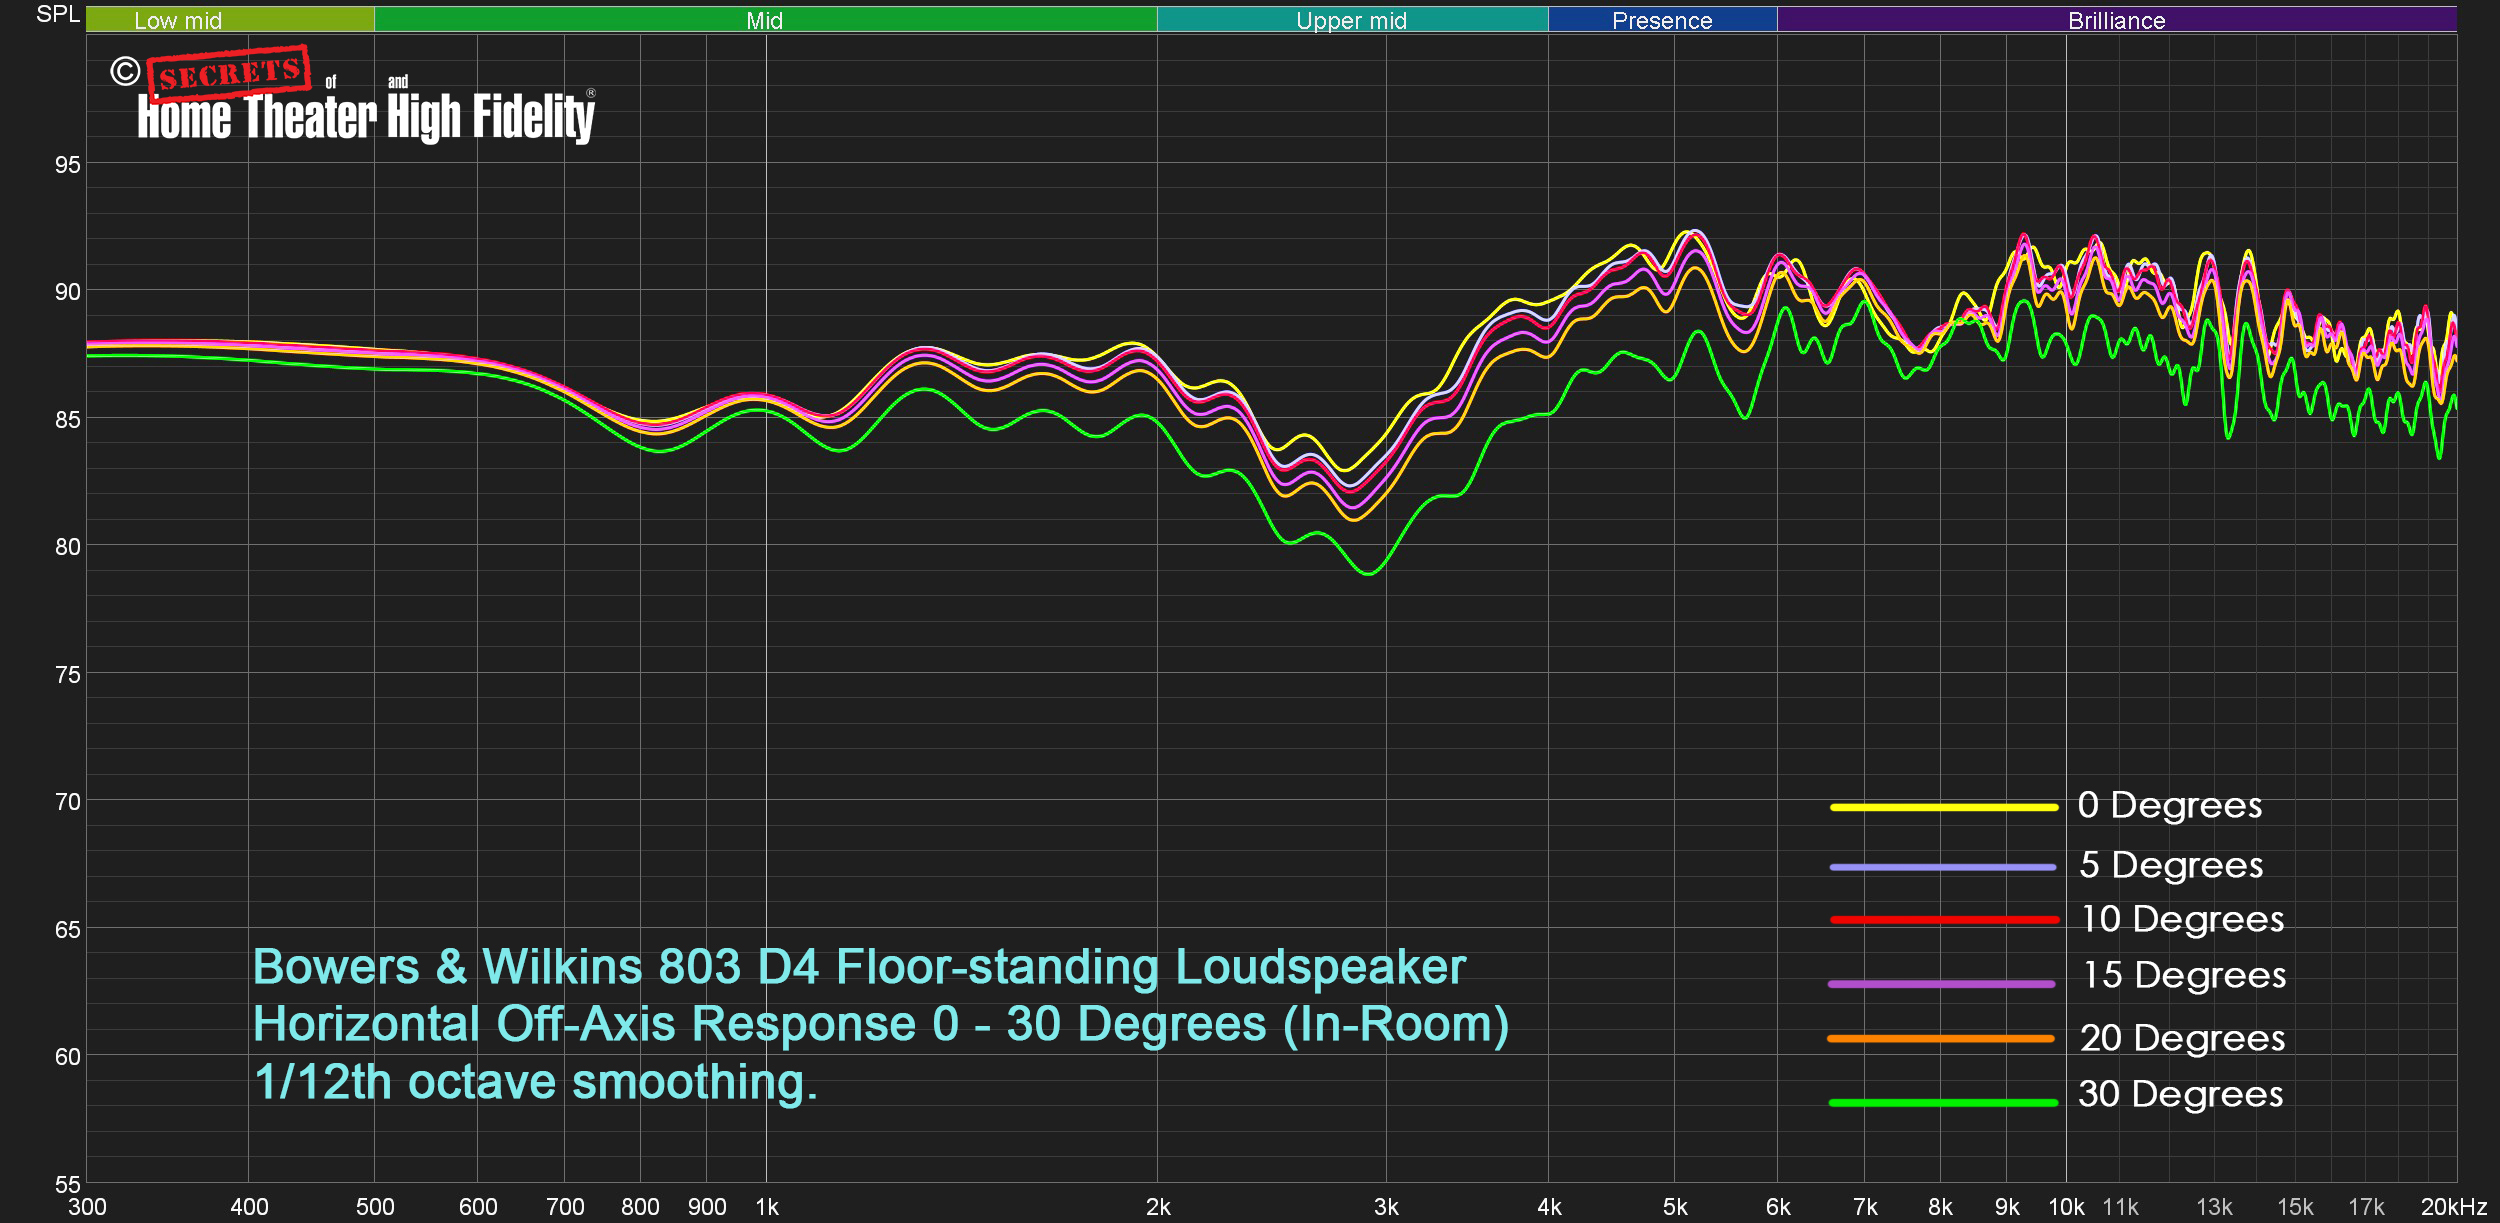 Bowers & Wilkins 803 D4 Loudspeakers Average In Room Off-Axis Response